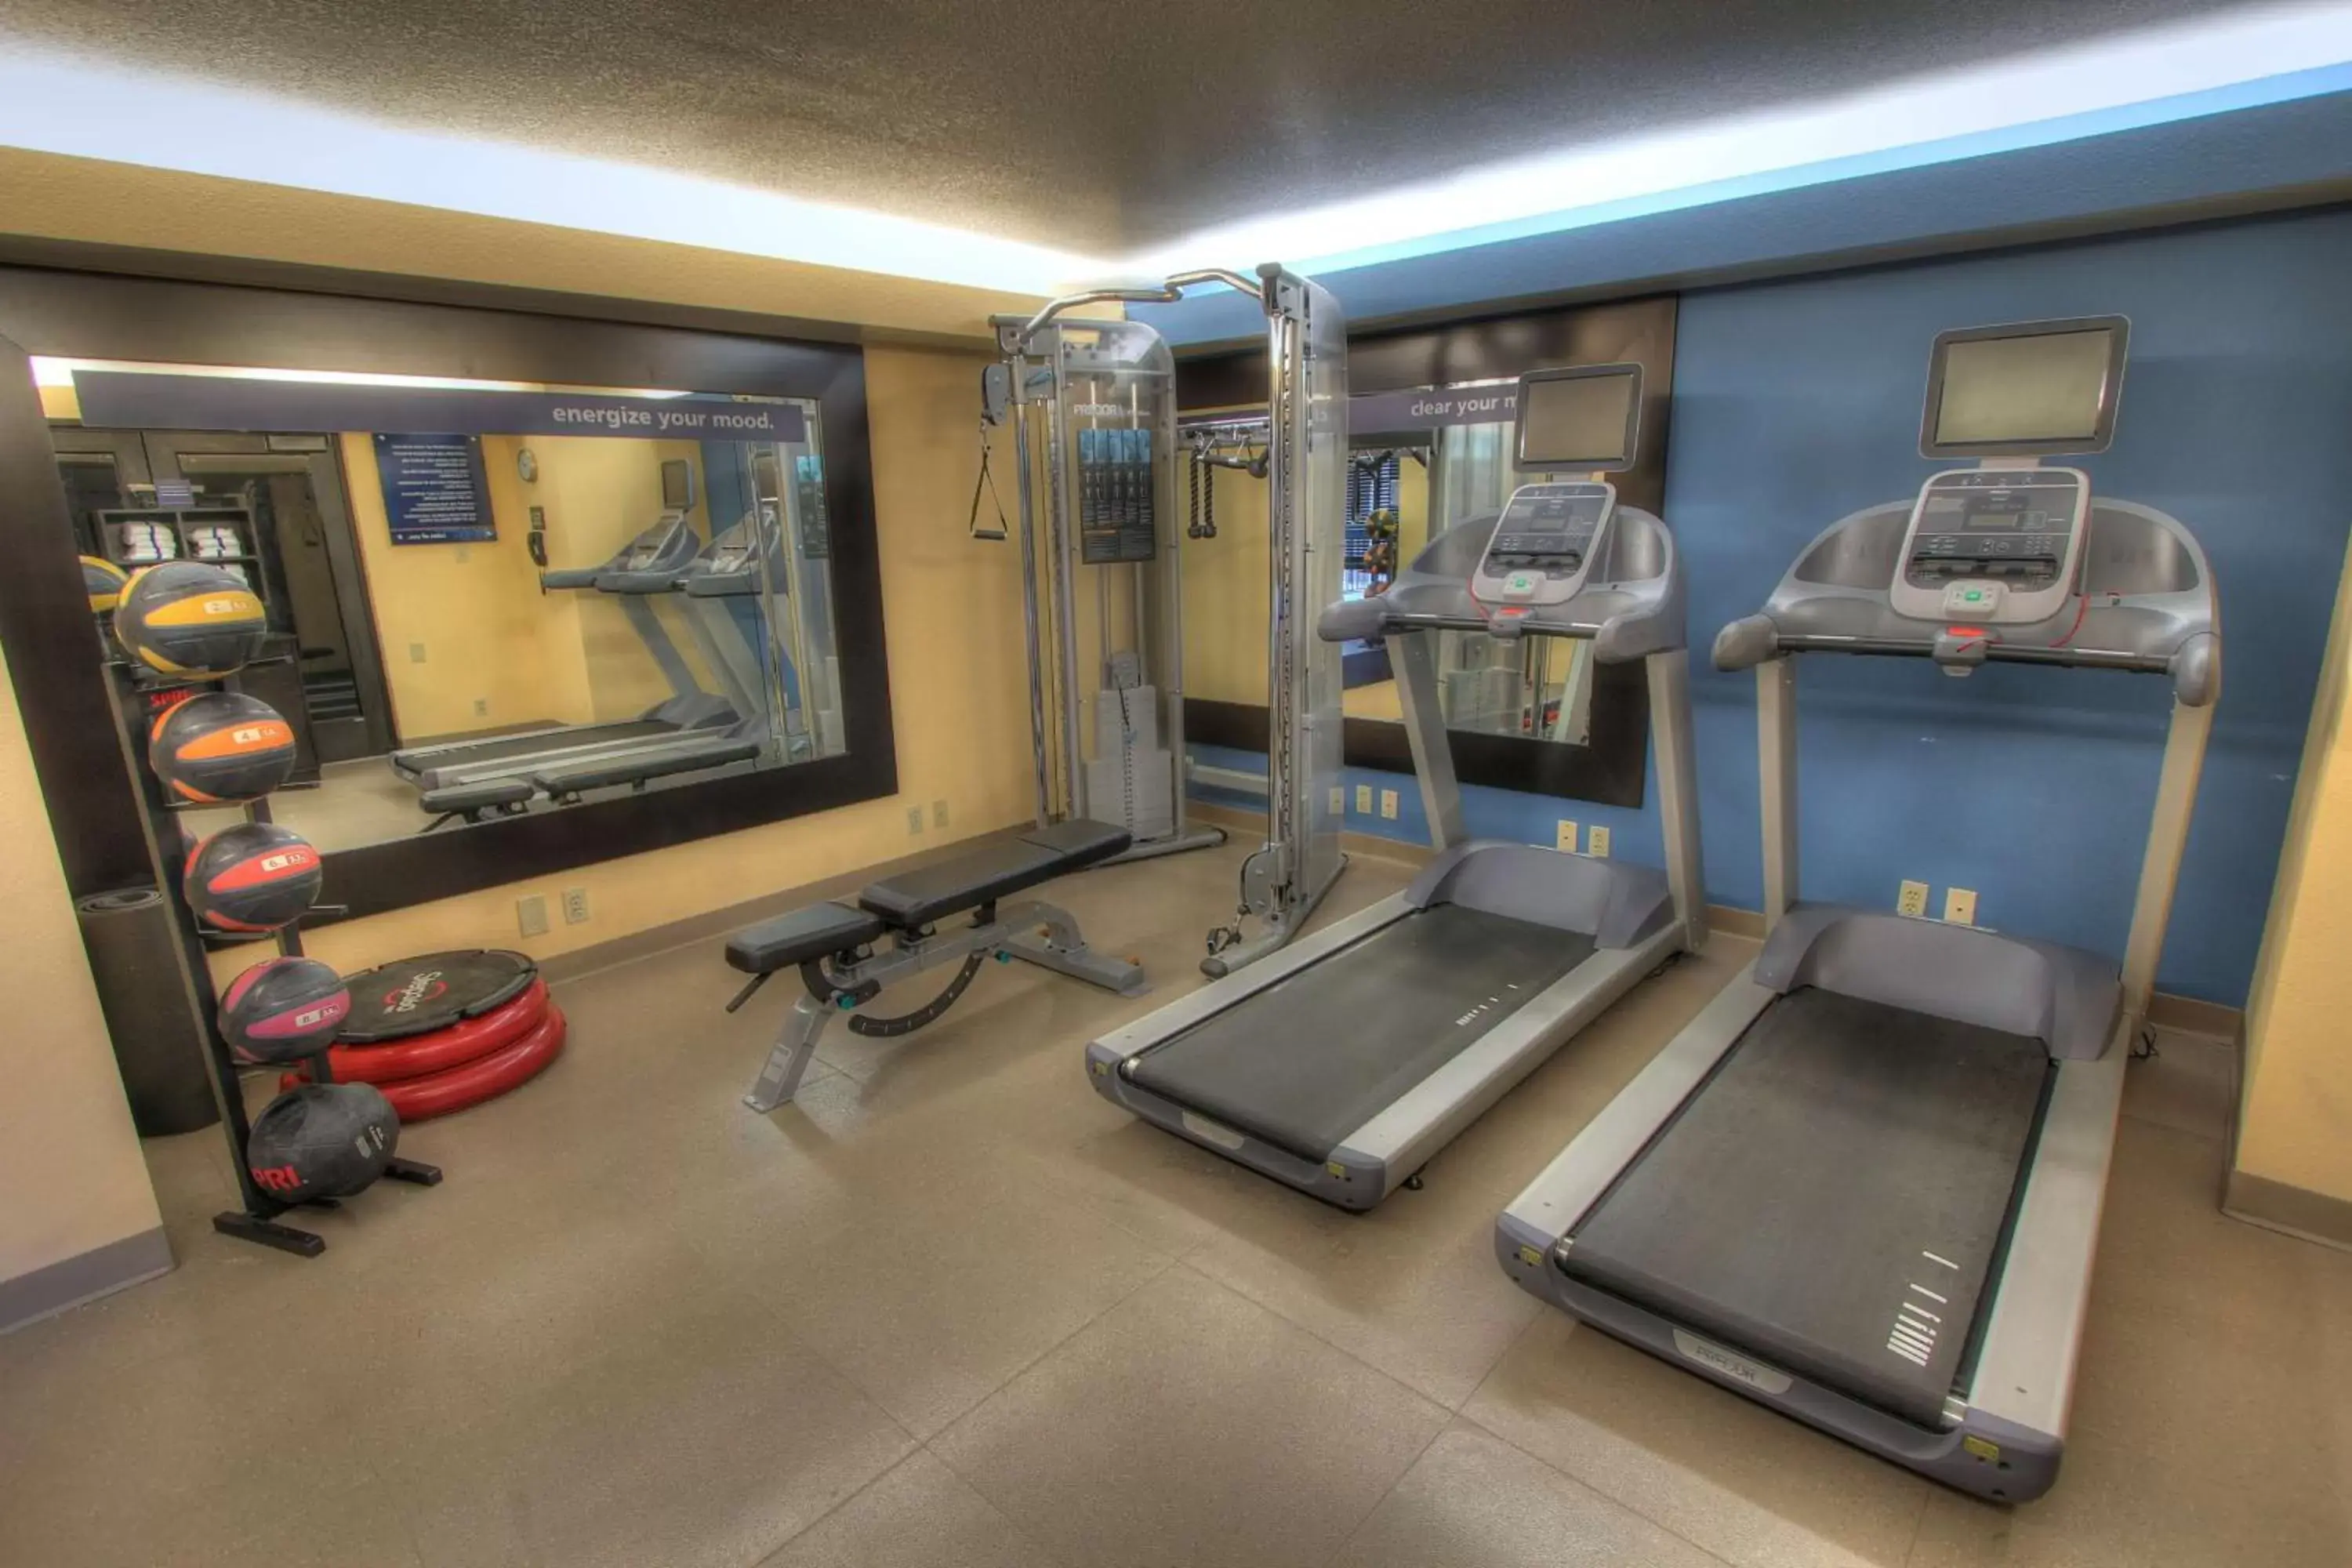 Fitness centre/facilities, Fitness Center/Facilities in Hampton Inn Gatlinburg